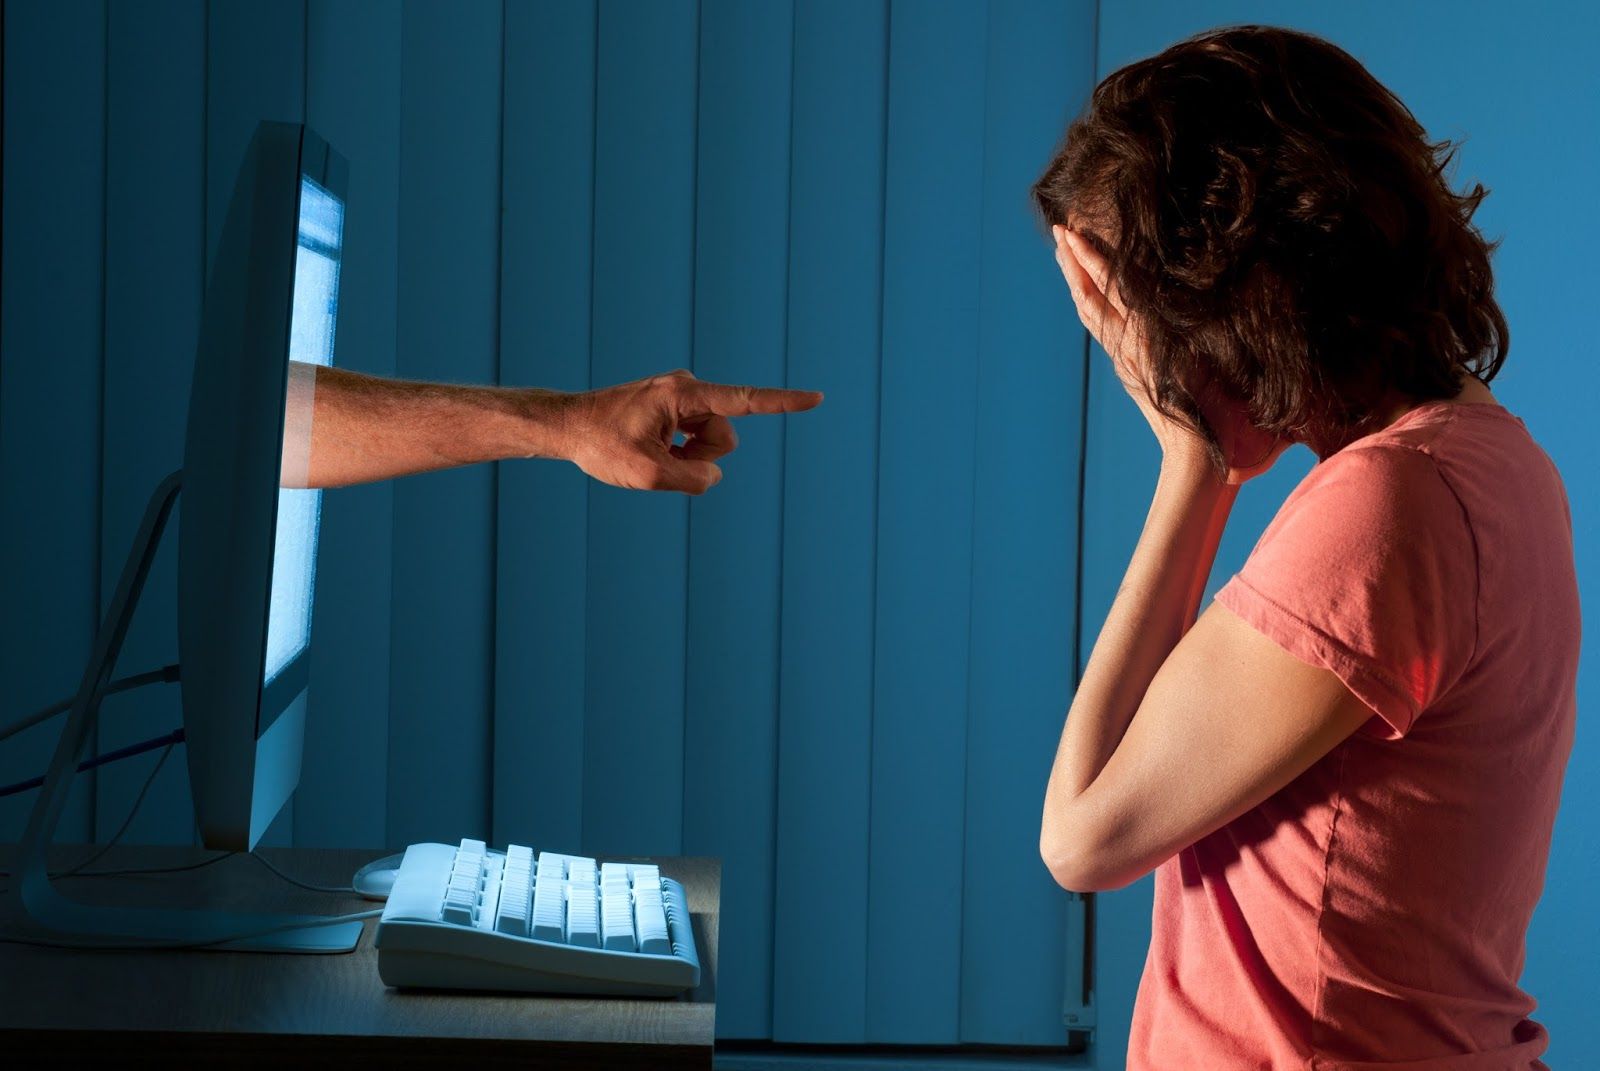 Violencia digital: las formas más comunes de acoso en internet